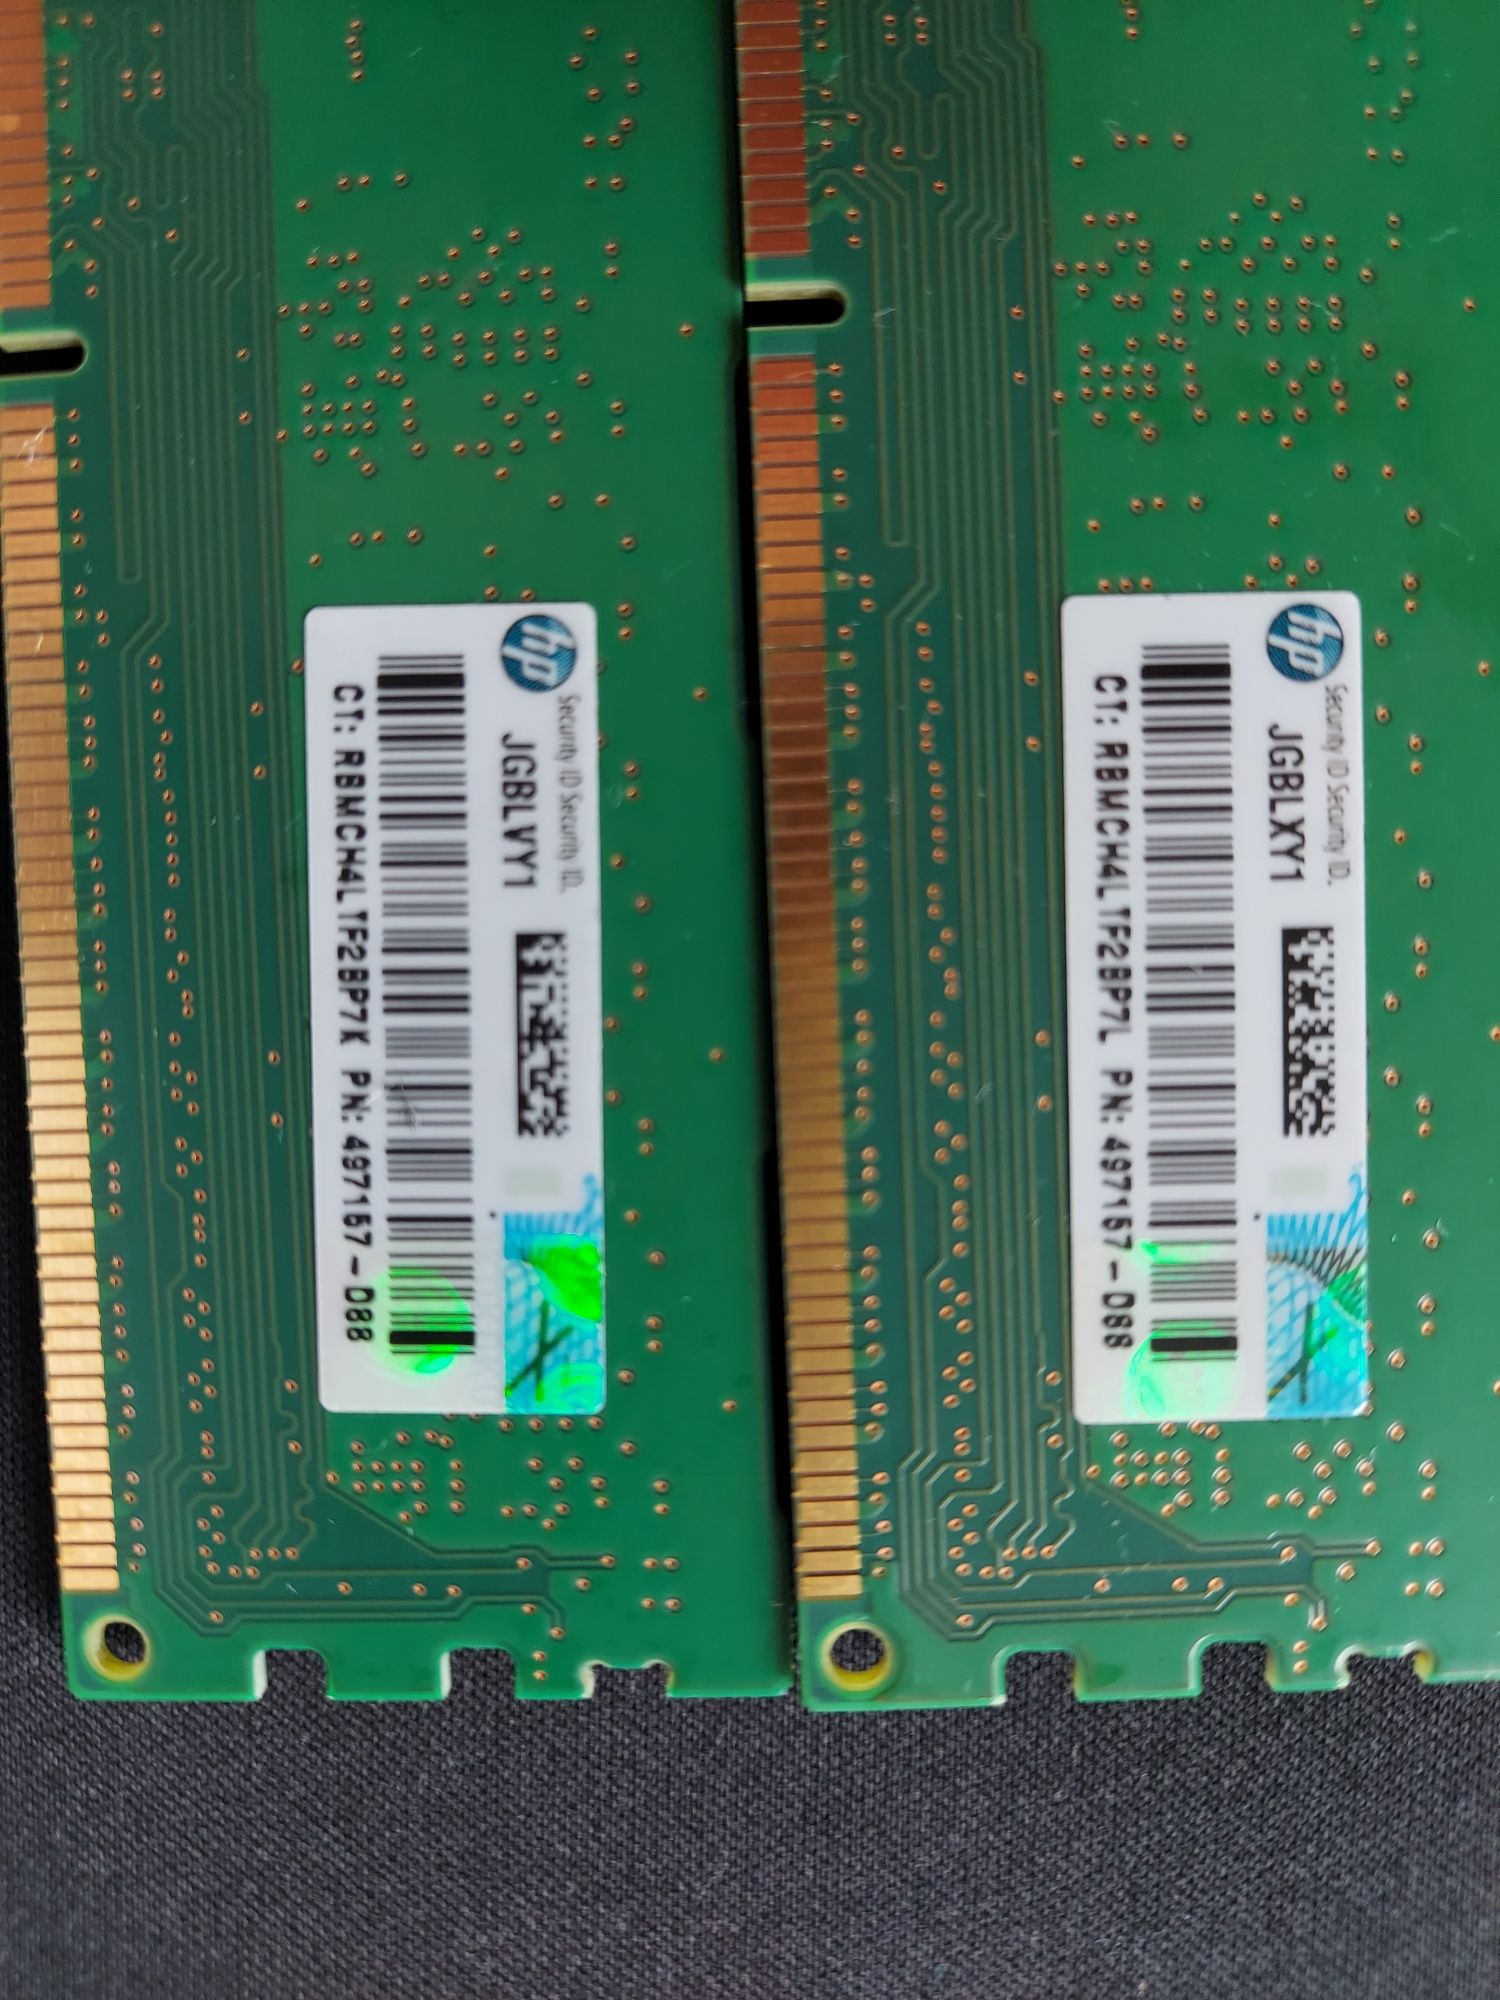 Пам'ять MICRON 2GB DDR3 1333 MHz 2шт.